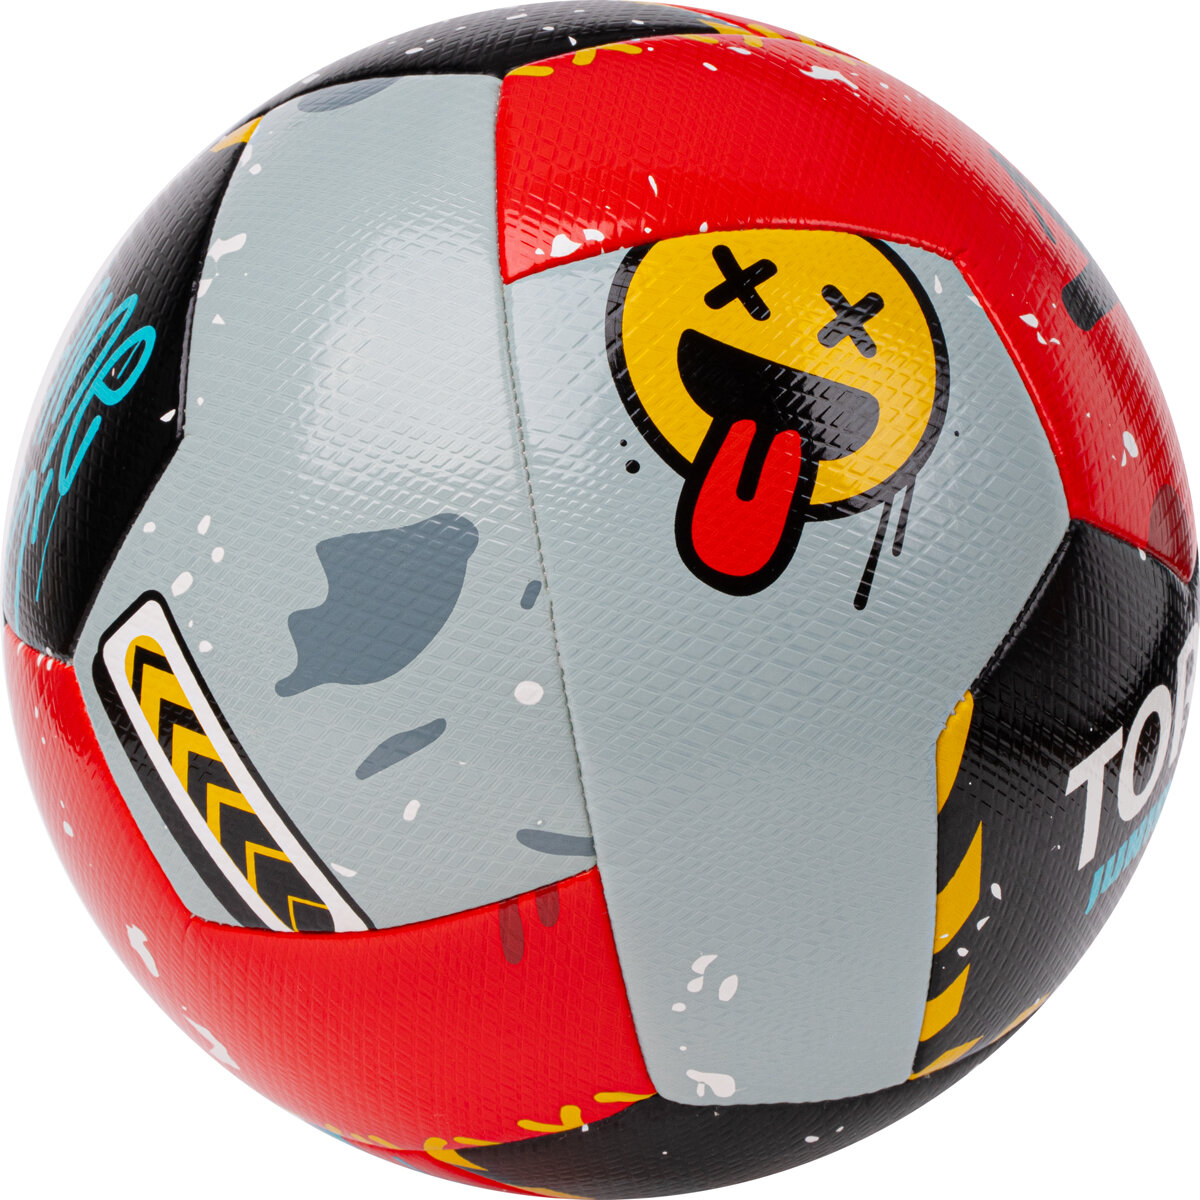 Мяч футбольный TORRES Junior-3 Super NEW гибридный, размер 3 (5-8 лет) поставляется накаченным